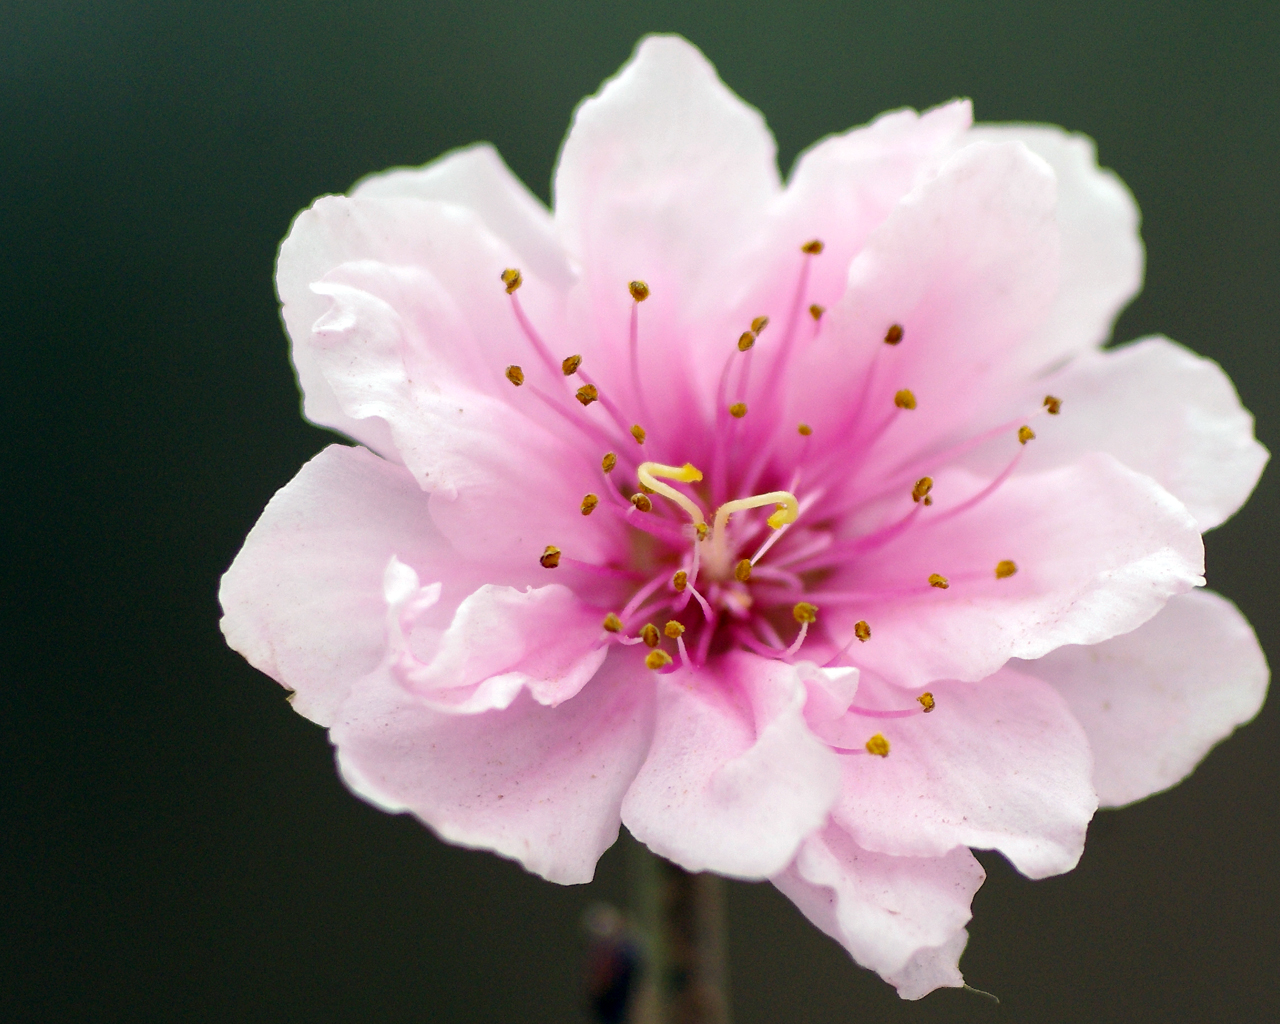 Sự sống đọng lại trong gốc cây hoa đào tết sẽ làm bạn cảm nhận rõ hơn về giá trị thiêng liêng của cây đào trong truyền thống tết nguyên đán của Việt Nam. Hãy xem ngay bức ảnh để tận hưởng không khí đón tết đặc biệt này.